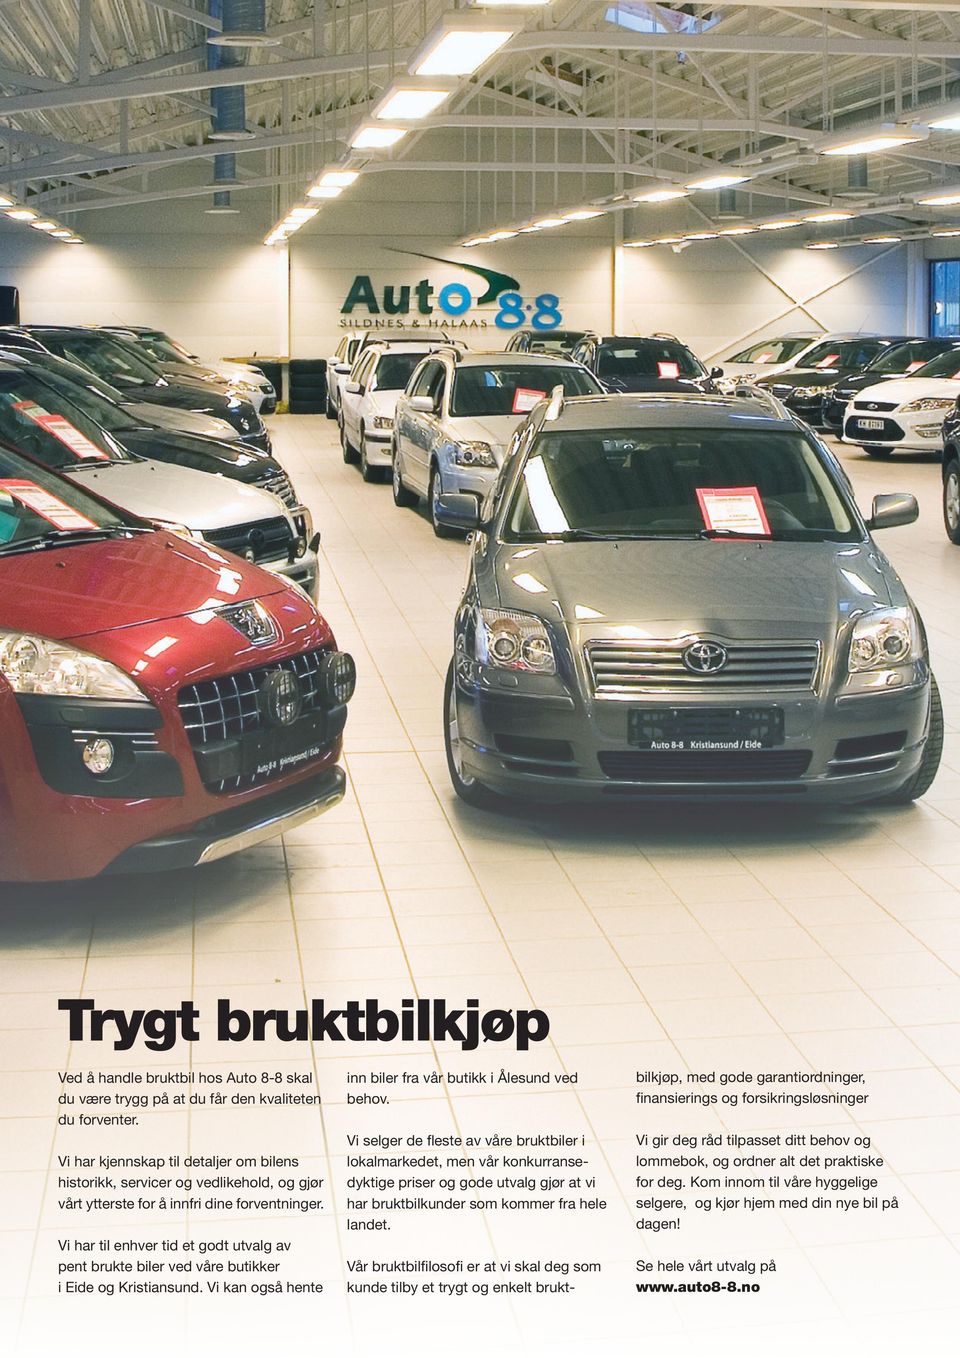 Vi har til enhver tid et godt utvalg av pent brukte biler ved våre butikker i Eide og Kristiansund. Vi kan også hente inn biler fra vår butikk i Ålesund ved behov.